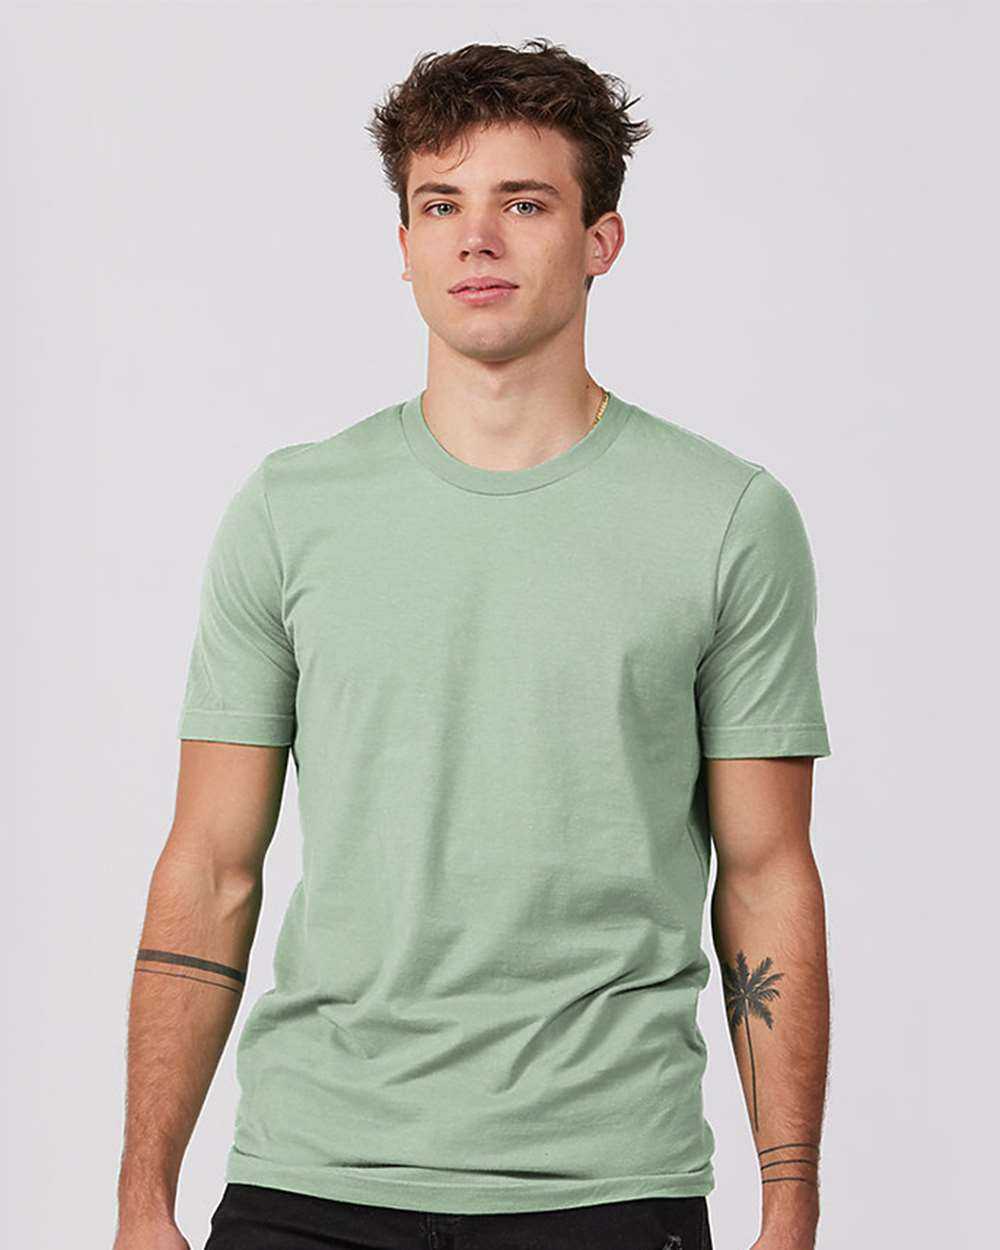 Tultex 502 Premium Cotton T-Shirt - Sage - HIT a Double